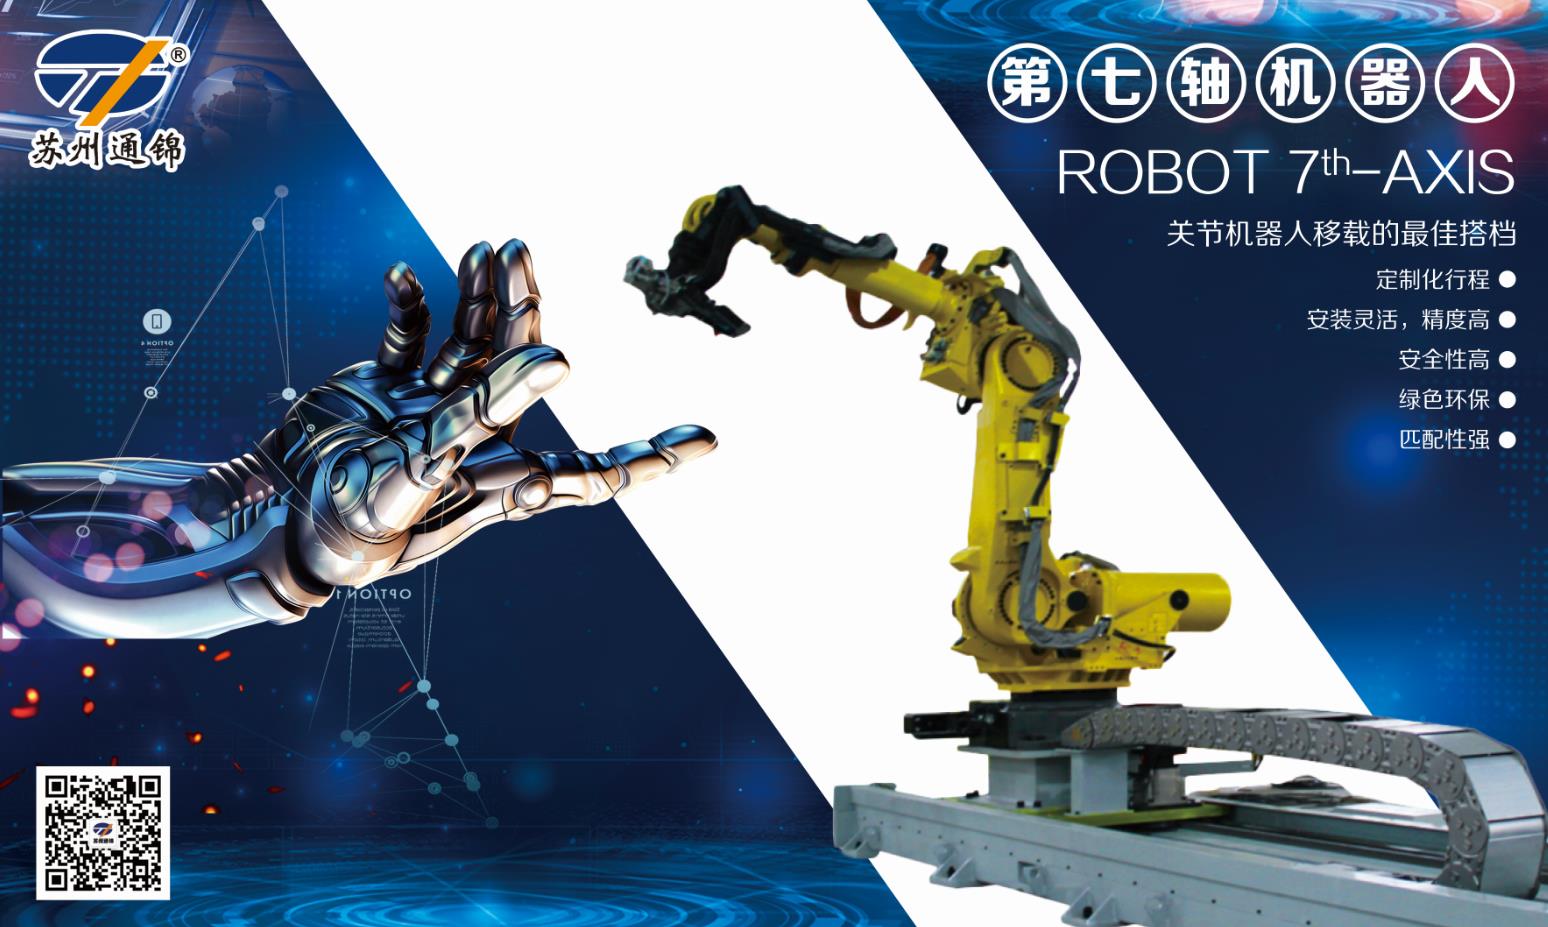 【展會專欄】2019中國工博會機器人展，我們蓄勢待發！